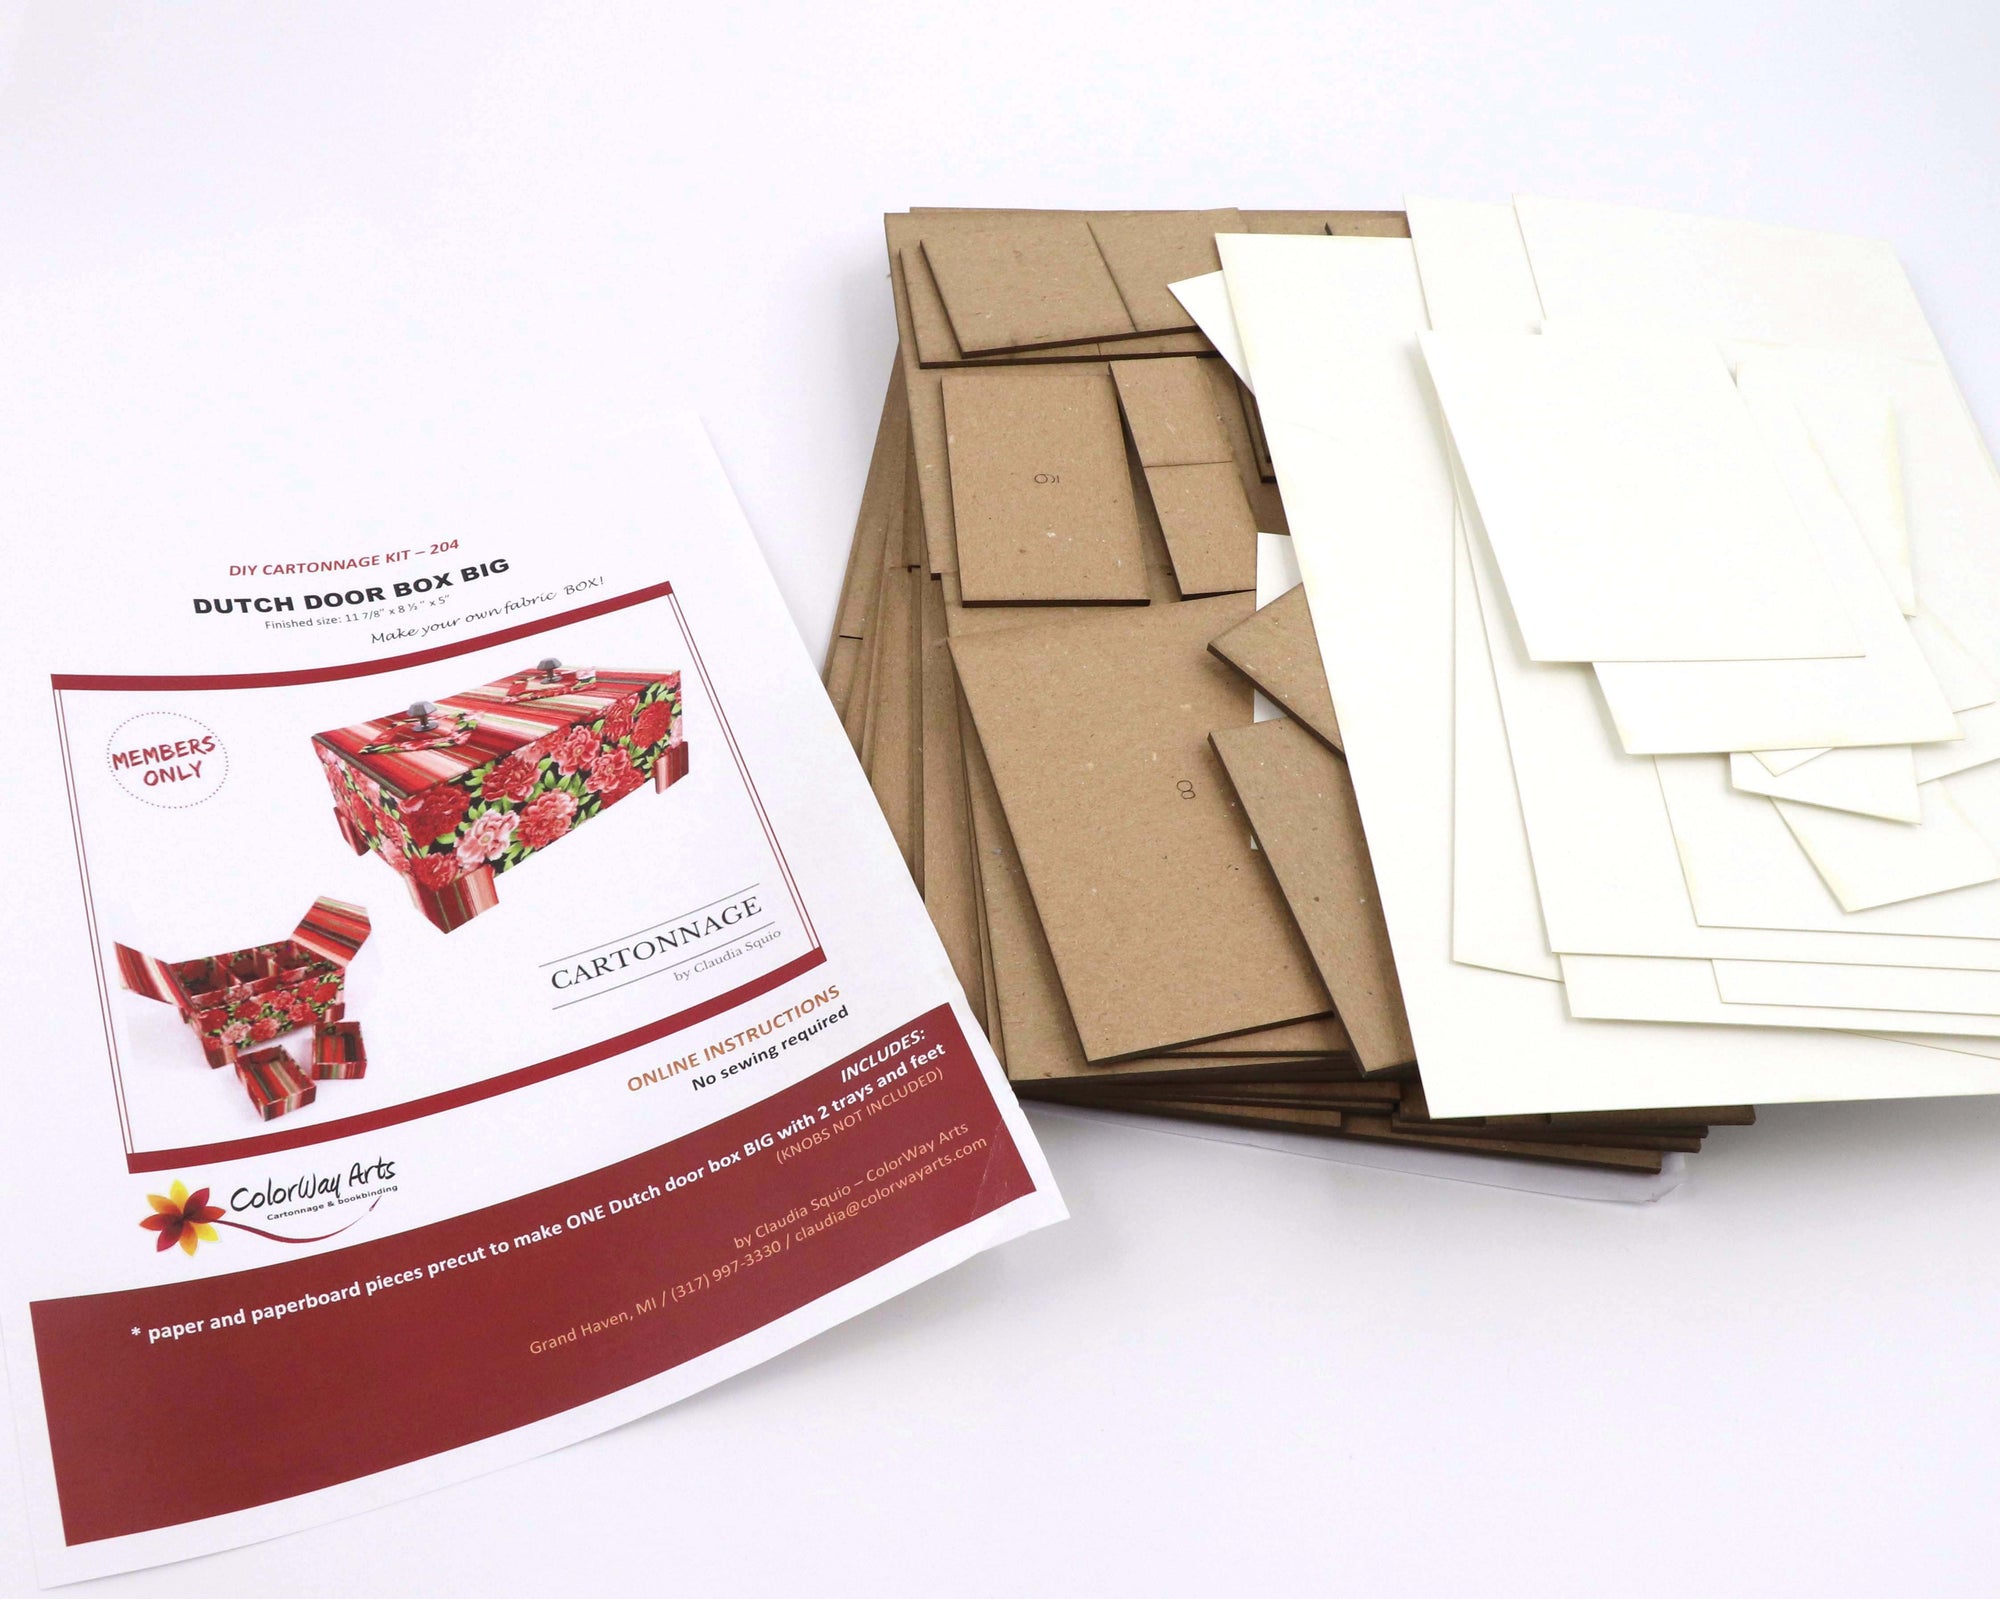 Fabric Dutch Door box DIY kit BIG,  cartonnage kit 204 - Colorway Arts